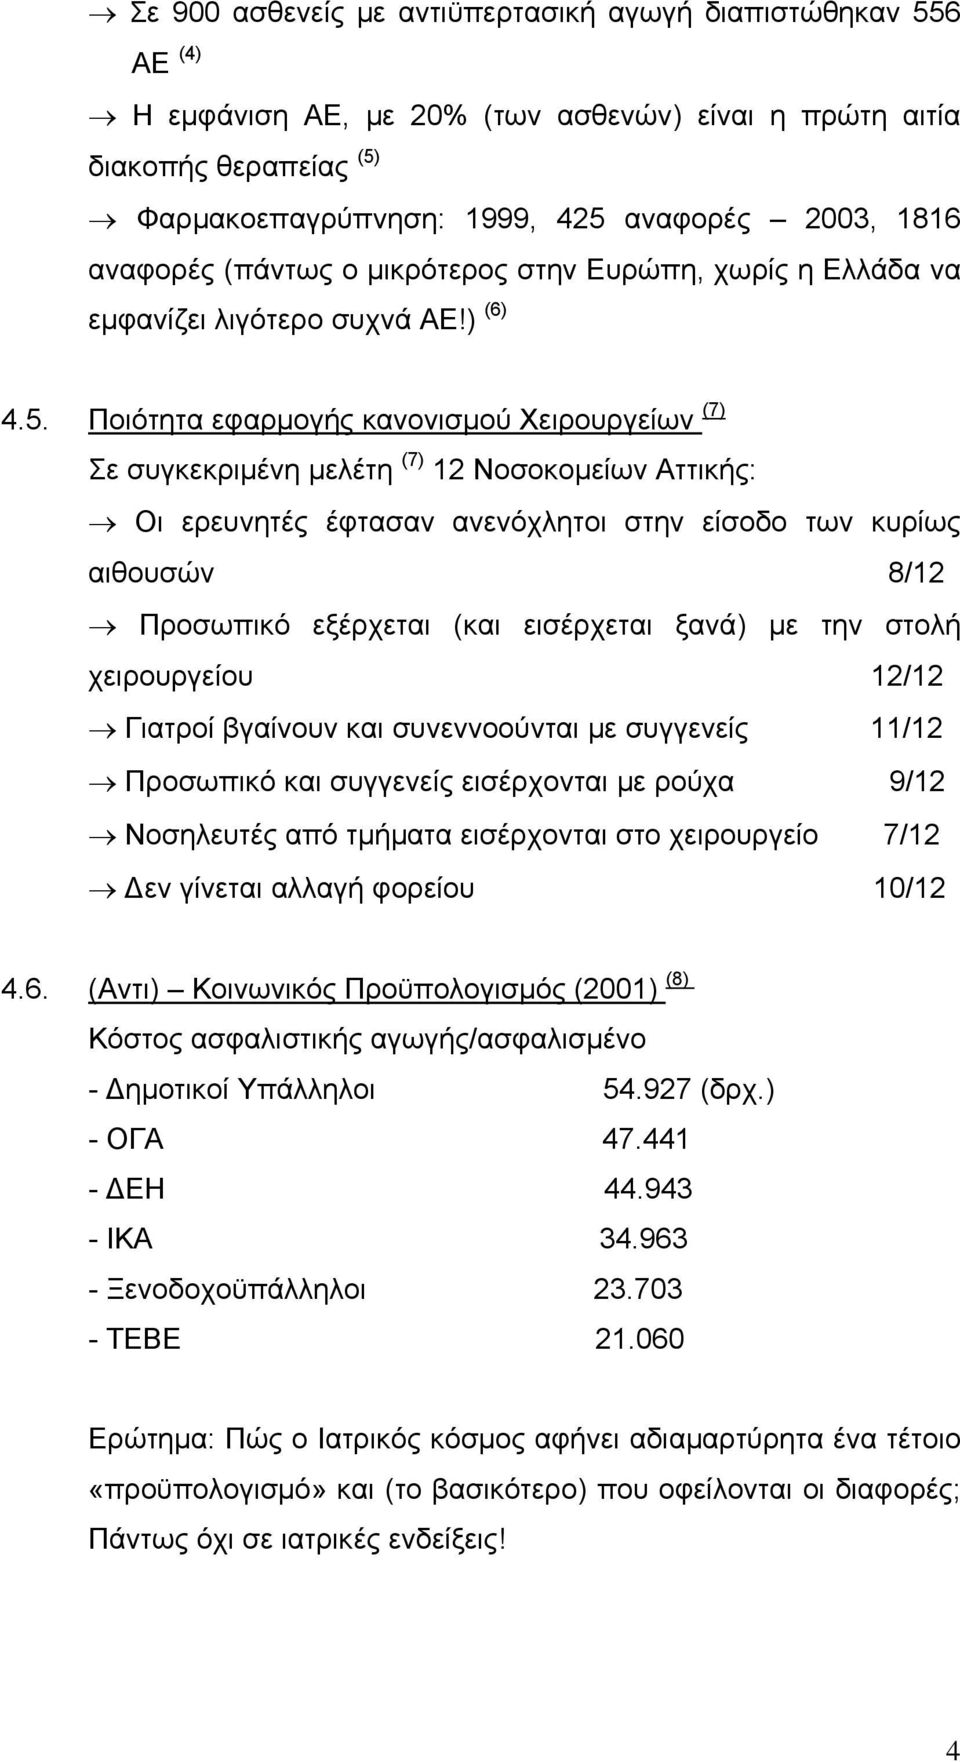 Ποιότητα εφαρμογής κανονισμού Χειρουργείων (7) Σε συγκεκριμένη μελέτη (7) 12 Νοσοκομείων Αττικής: Οι ερευνητές έφτασαν ανενόχλητοι στην είσοδο των κυρίως αιθουσών 8/12 Προσωπικό εξέρχεται (και